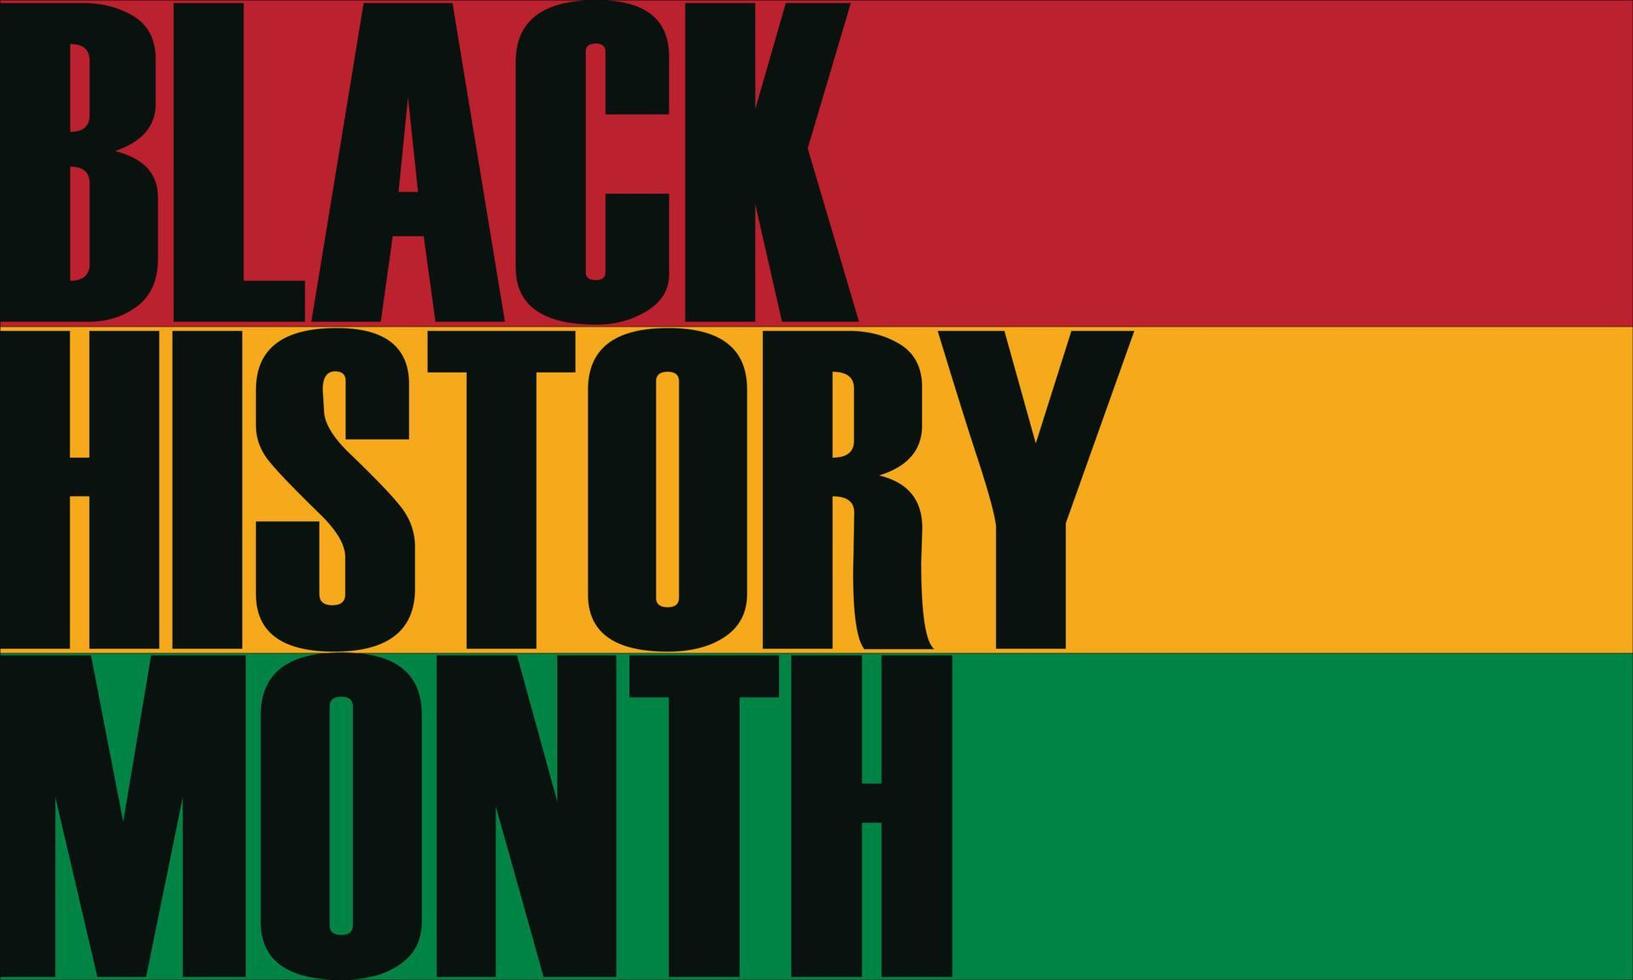 mês da história negra comemorar. ilustração vetorial design gráfico história negra mês vetor